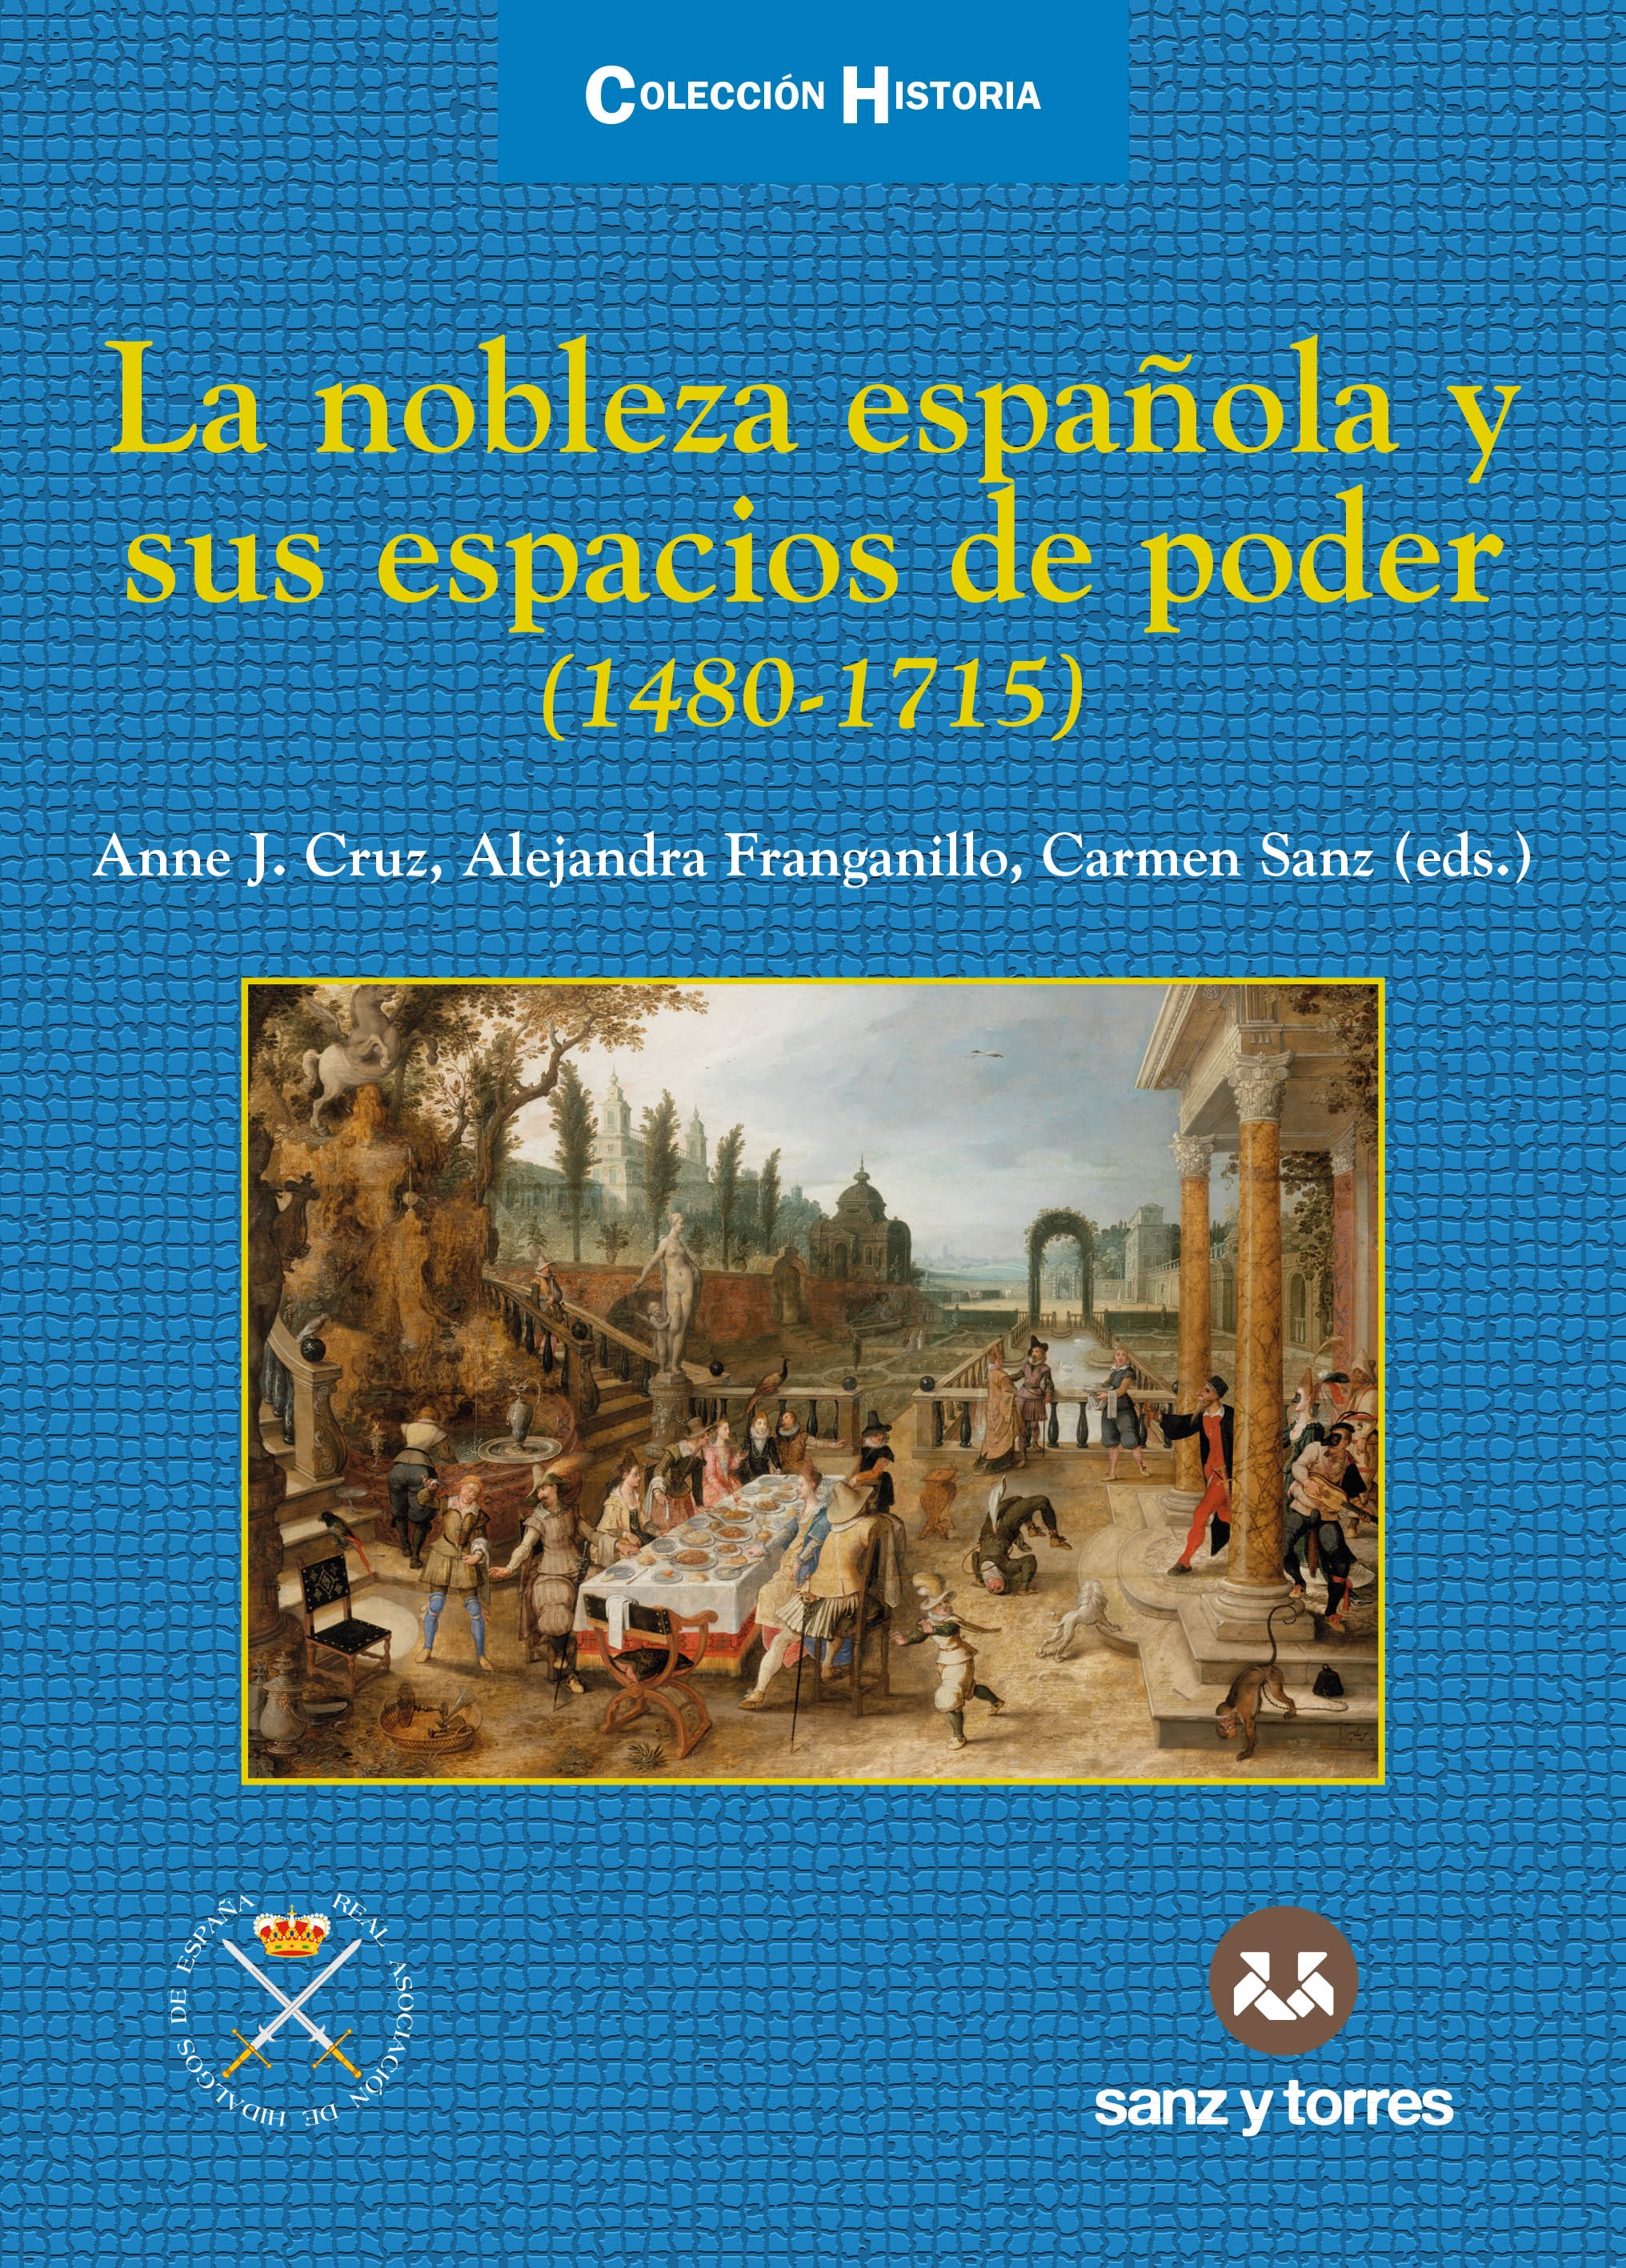 Imagen de portada del libro La nobleza española y sus espacios de poder (1480-1715)